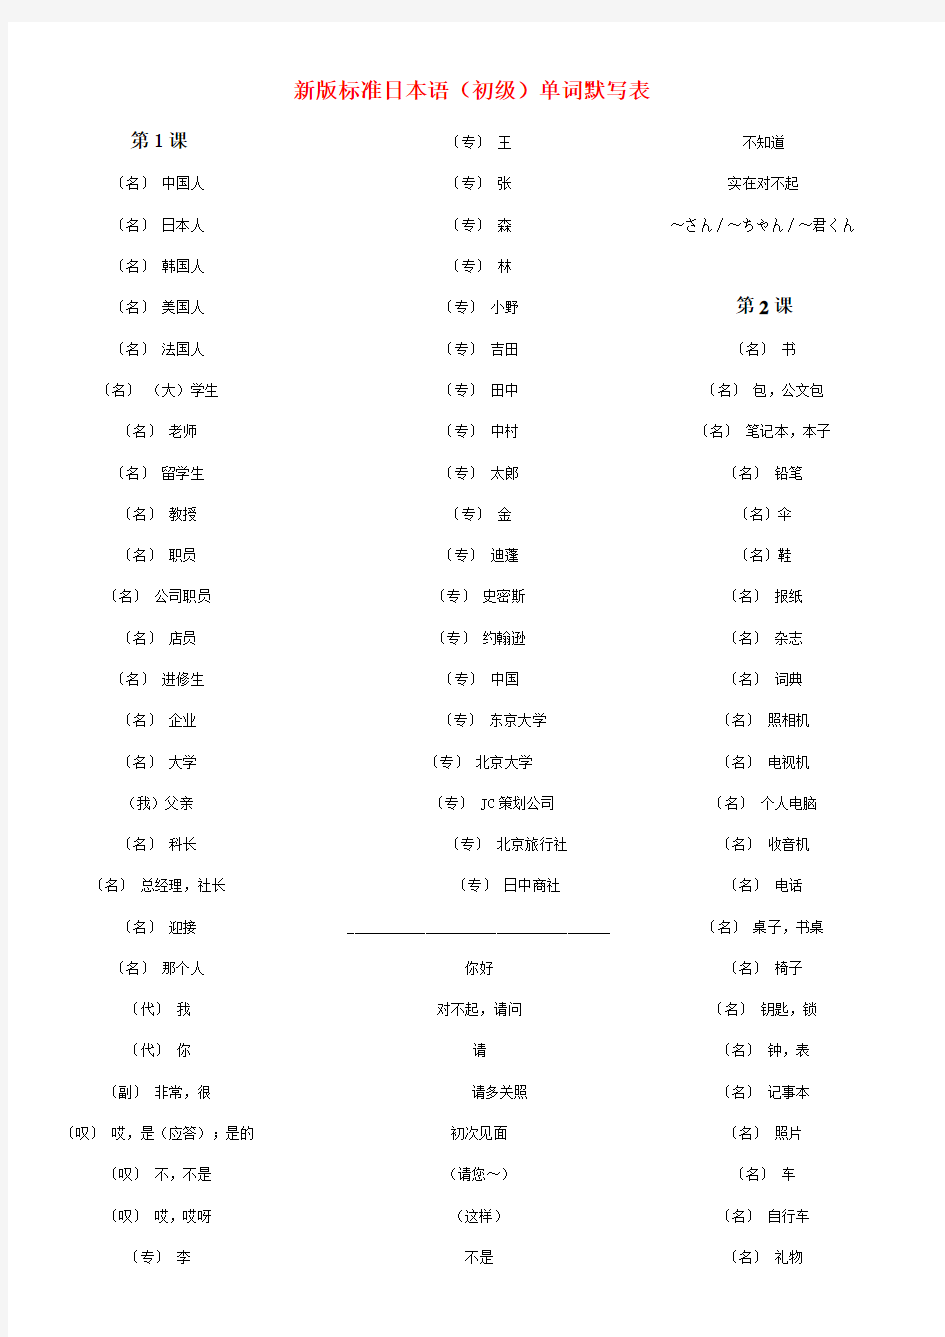 新版标准日本语(初级)上下册单词默写表